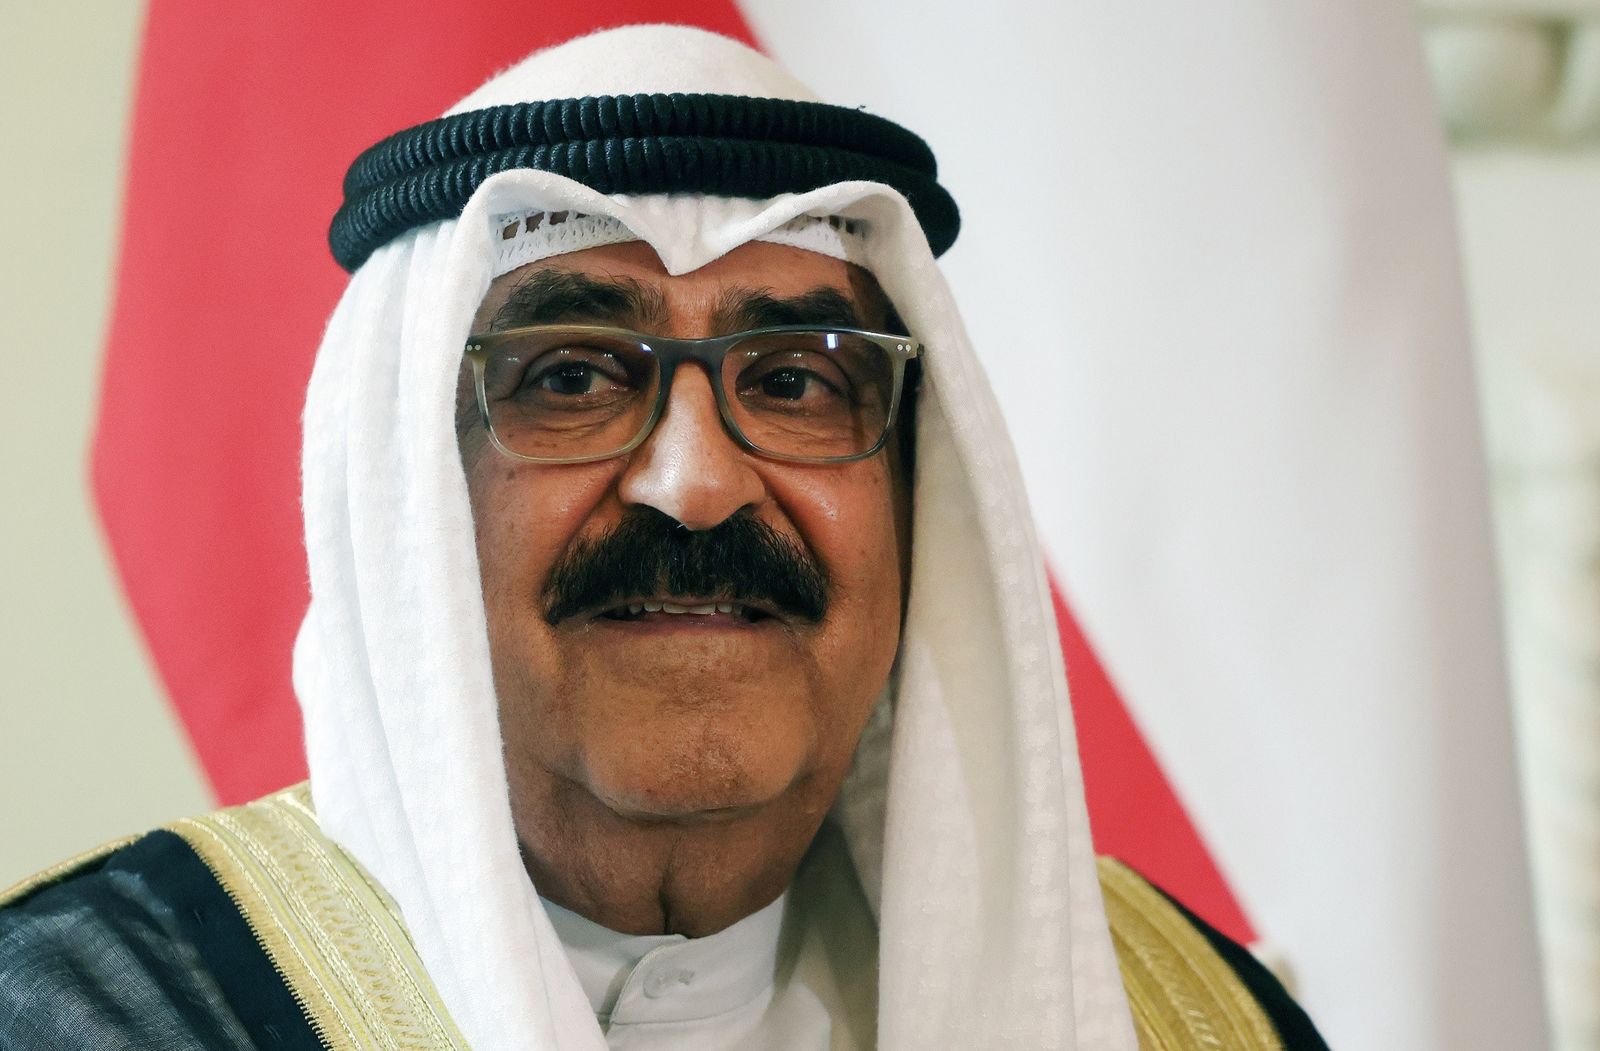 الكويت تنتخب برلماناً جديداً اليوم وسط جمود سياسي